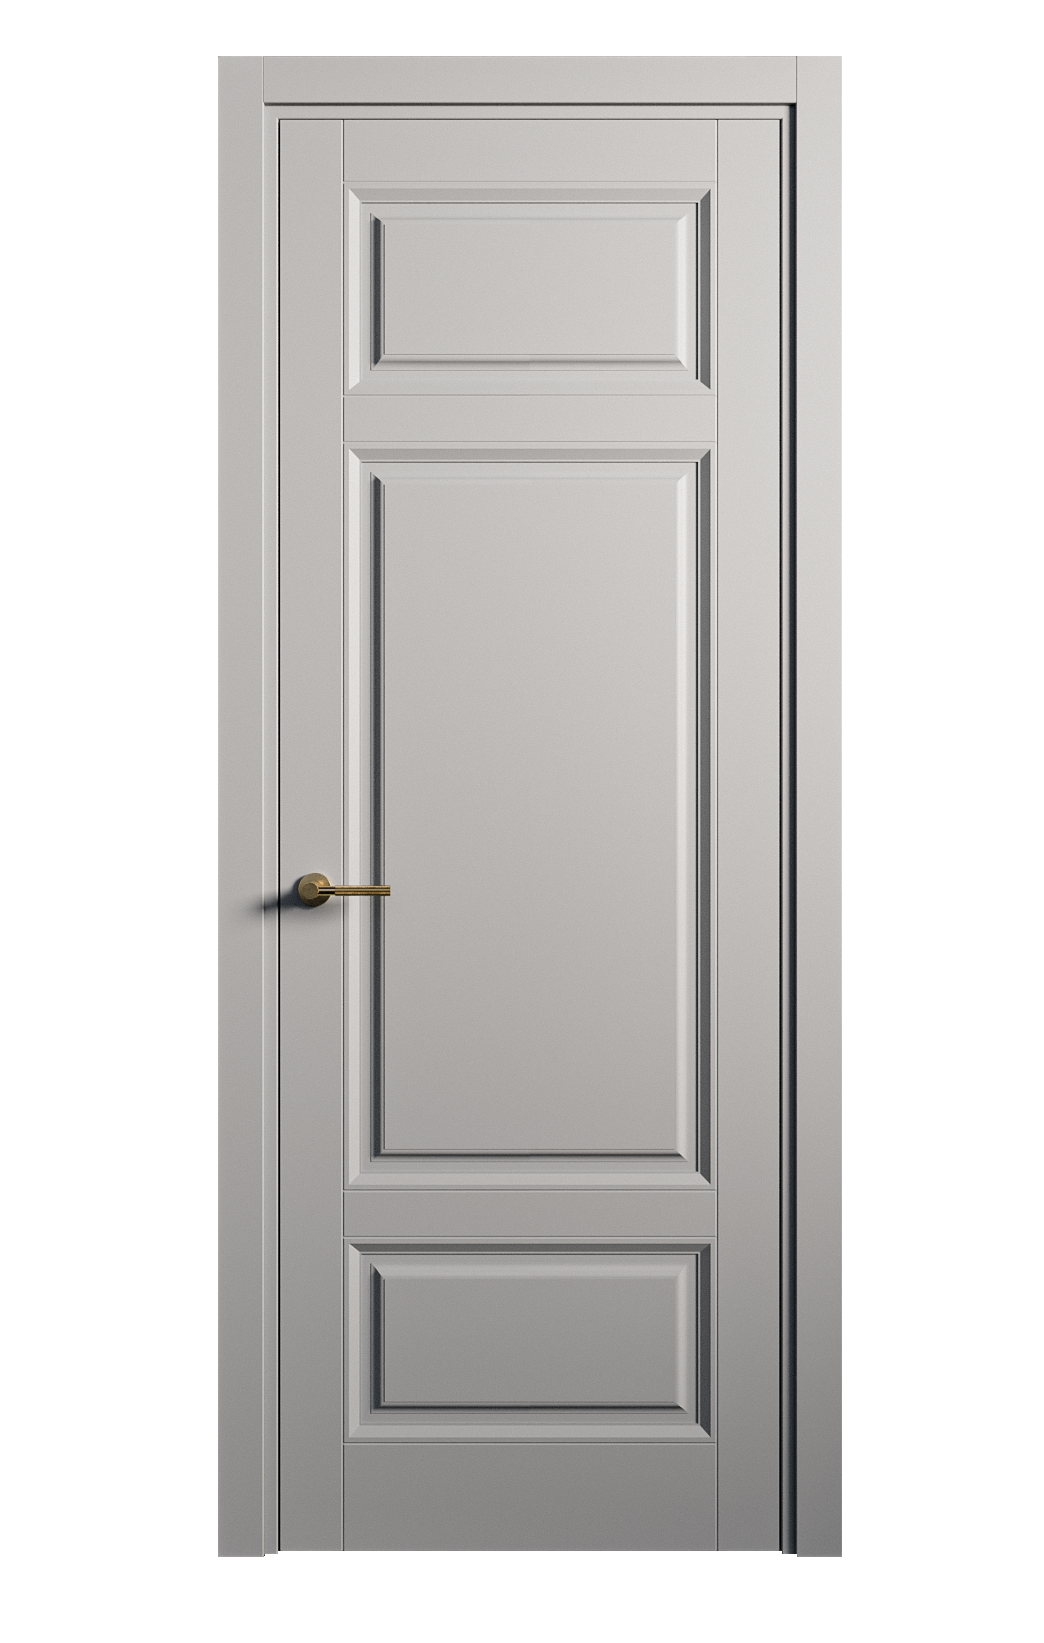 Межкомнатная дверь Venezia-5 глухая эмаль ral 7040 25900